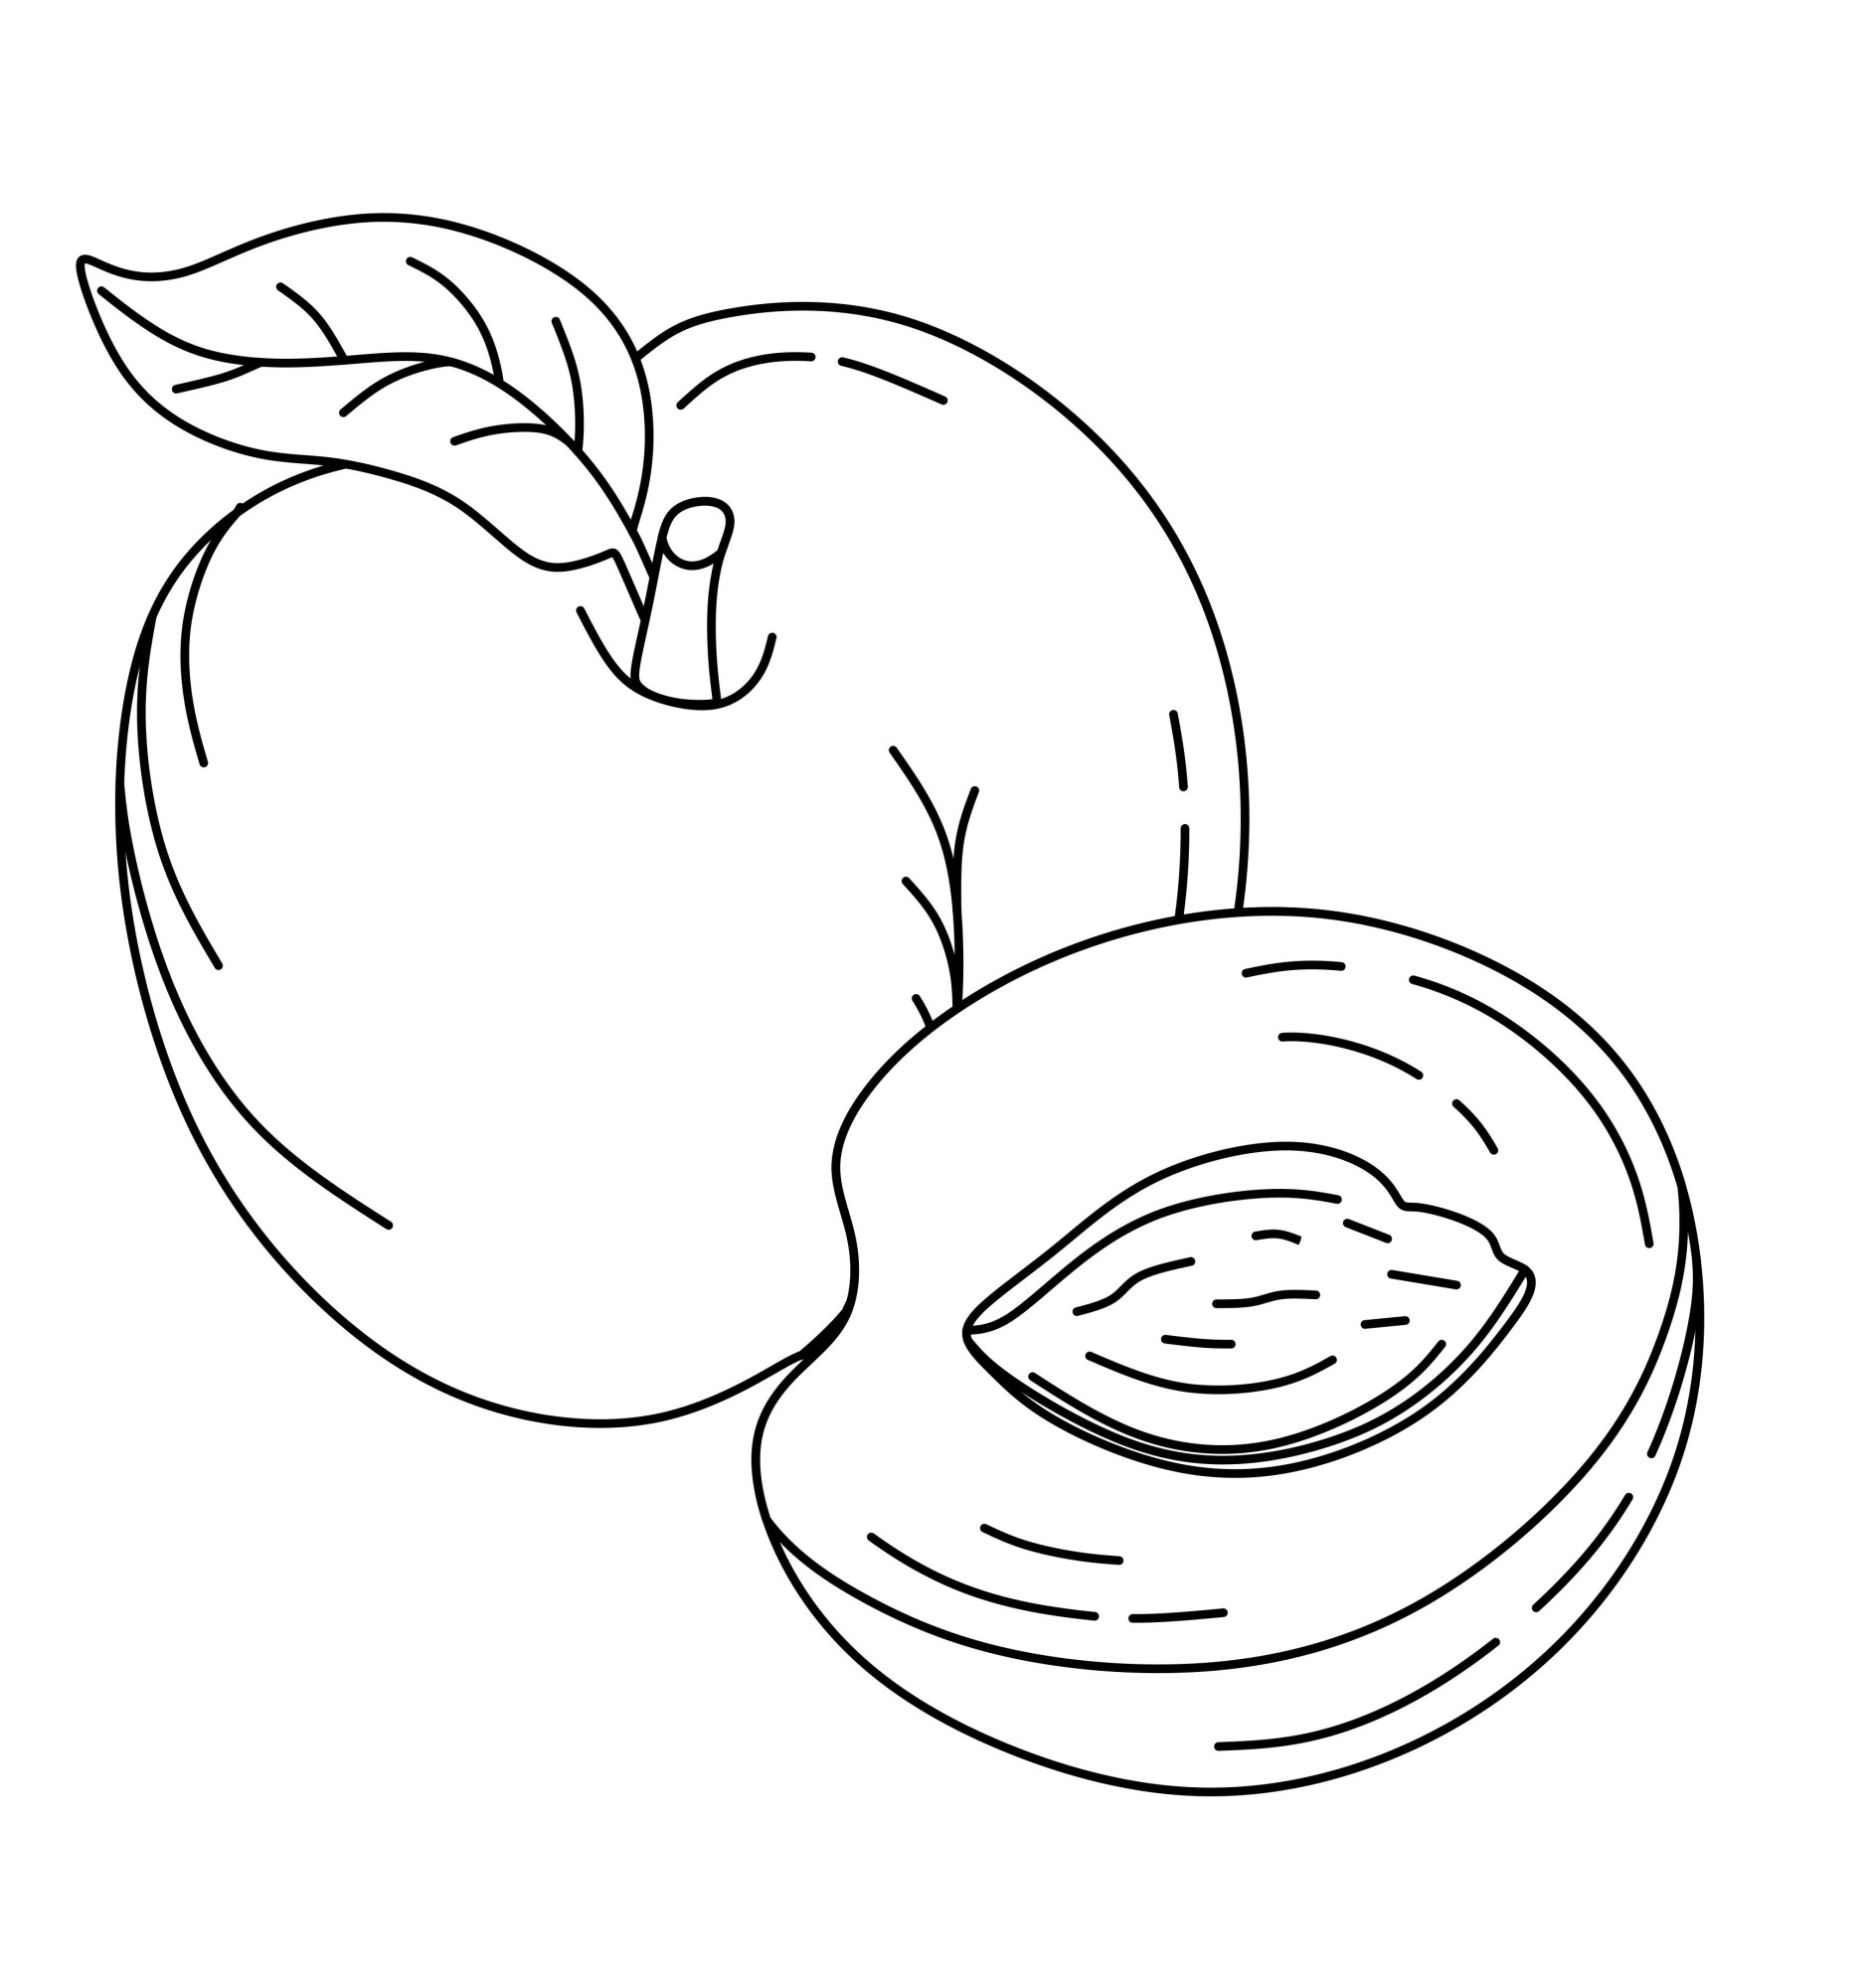 Раскраска для детей: персик с половинкой и косточкой